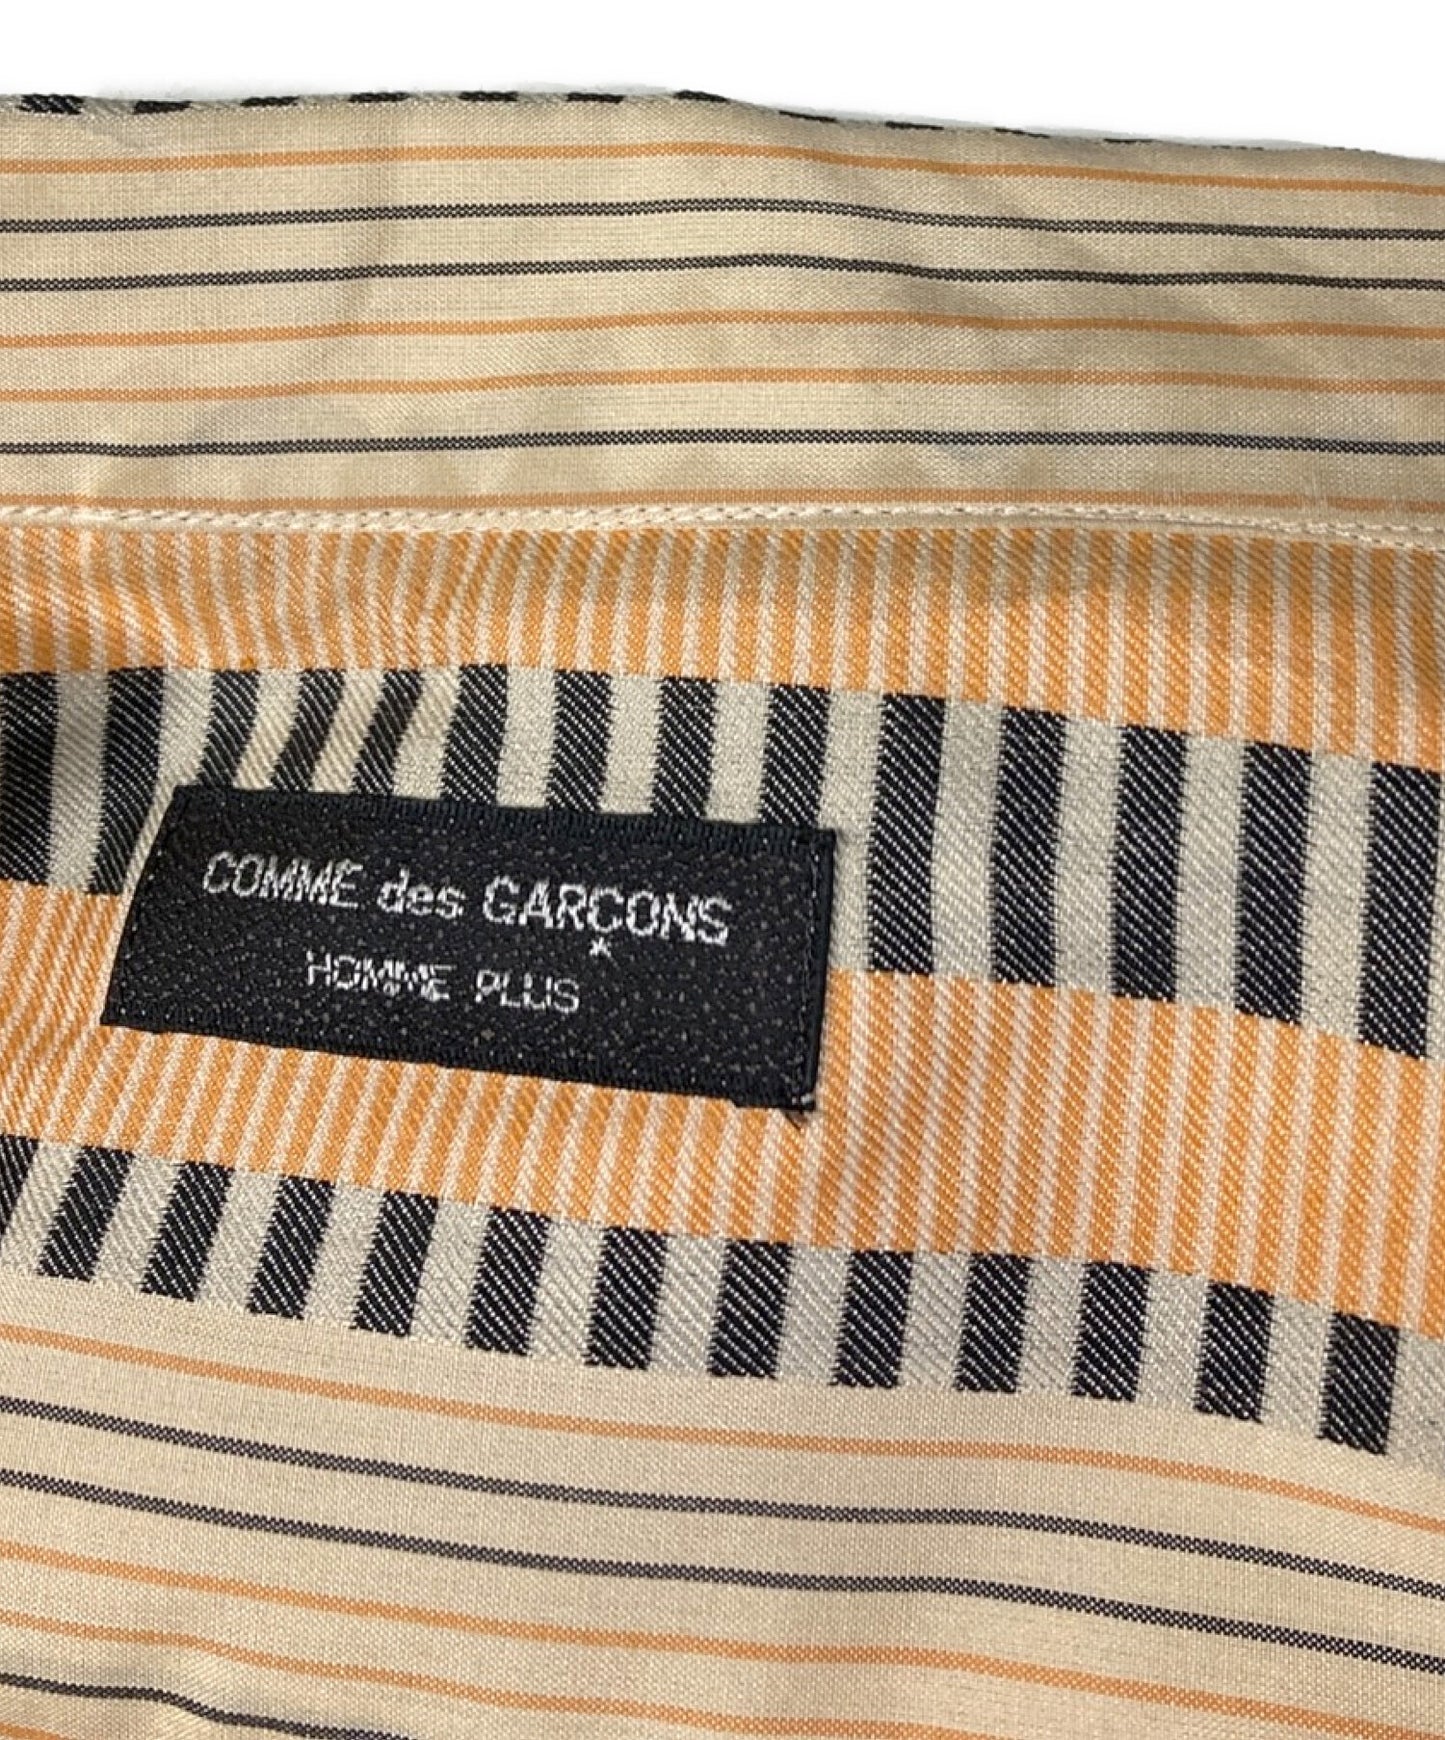 Comme des Garcons Homme Plus AD1997 S/S全面图案开放项圈丝绸衬衫PB-100240